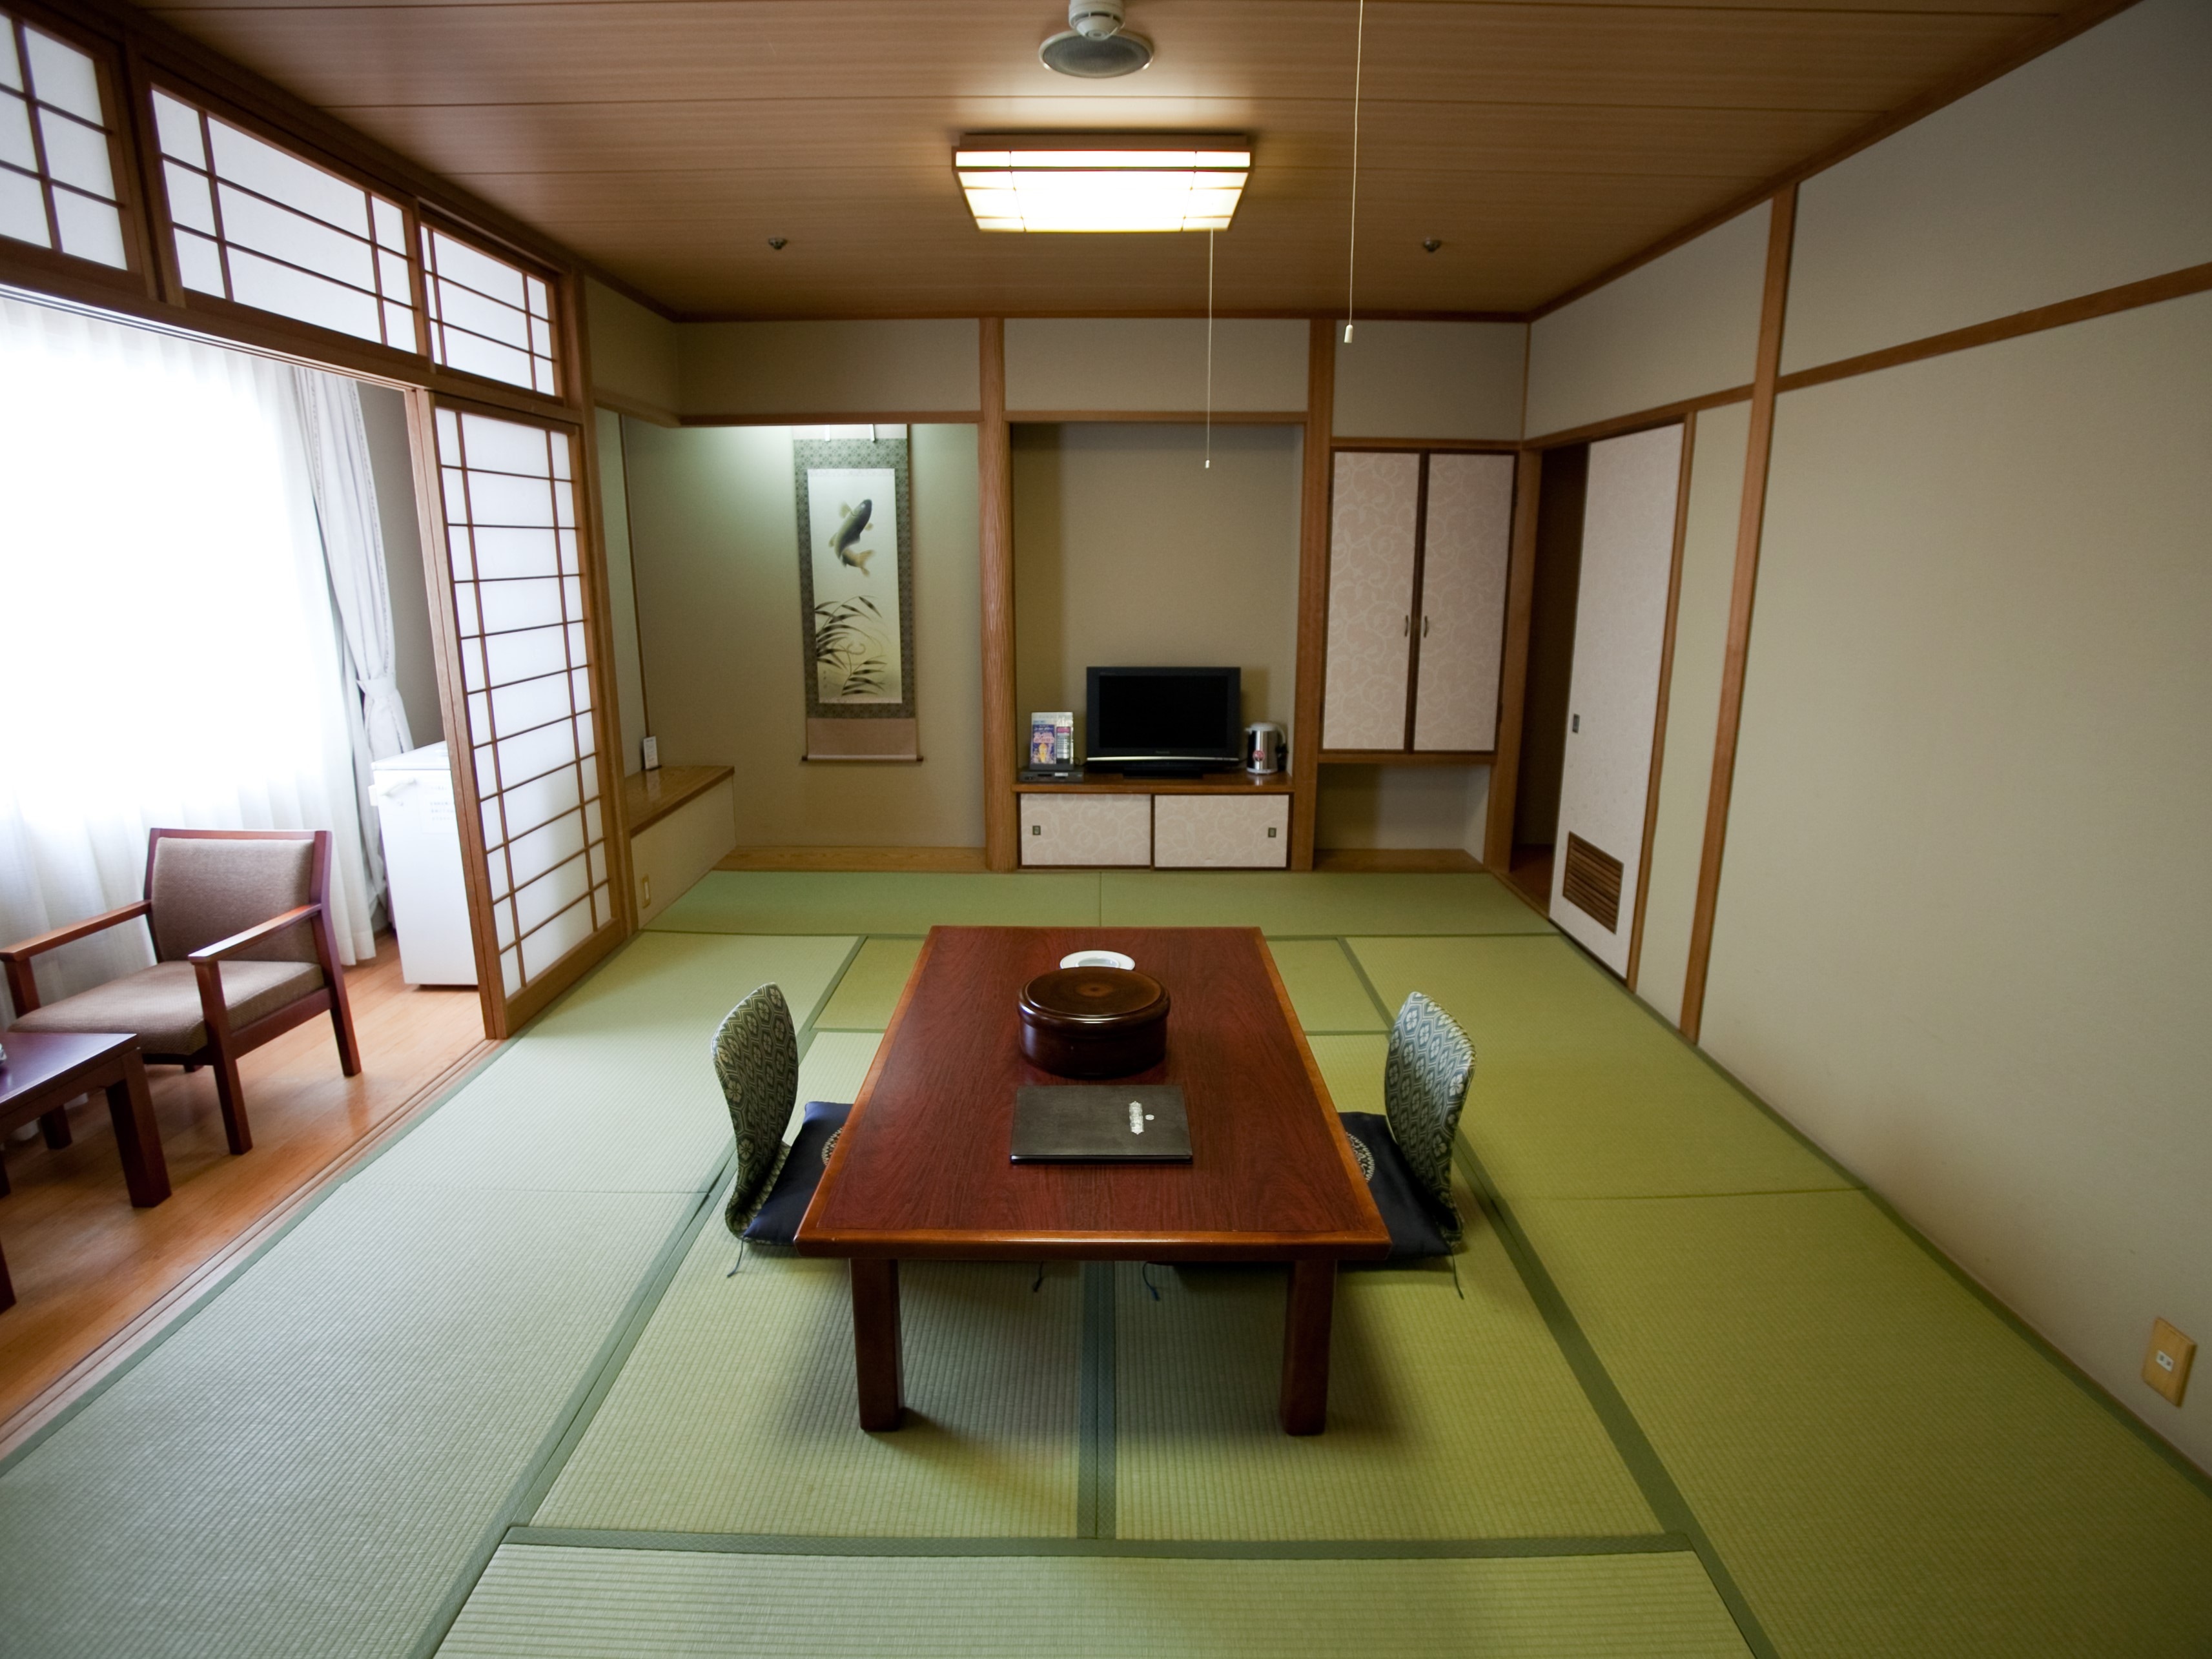 ห้องสไตล์ญี่ปุ่นที่กว้างขวางและผ่อนคลาย